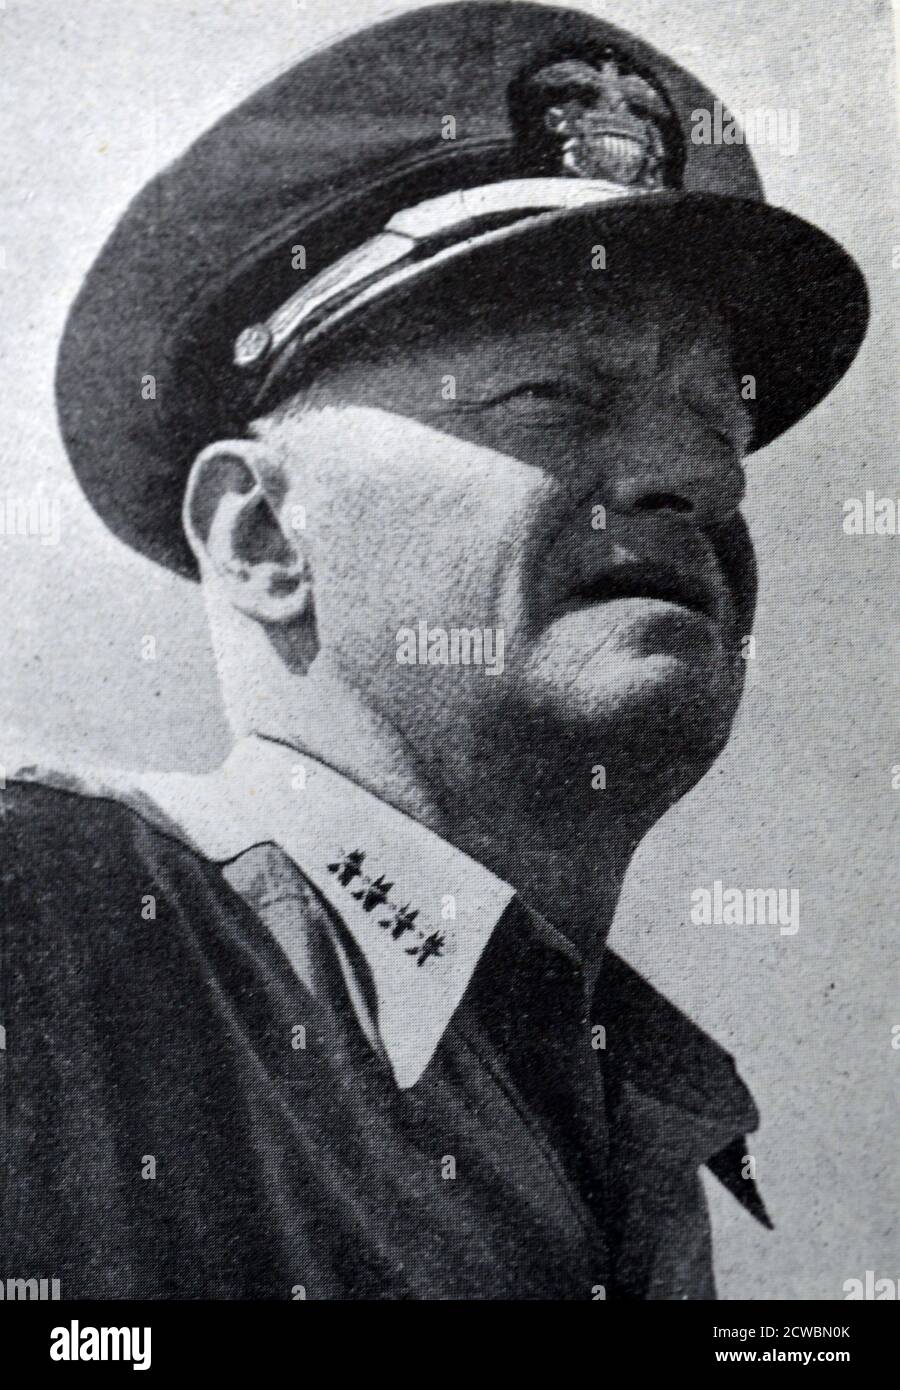 Photographie en noir et blanc de la Seconde Guerre mondiale (1939-1945); amiral américain Chester Nimitz (1885-1966), commandant en chef de la flotte du Pacifique. Banque D'Images